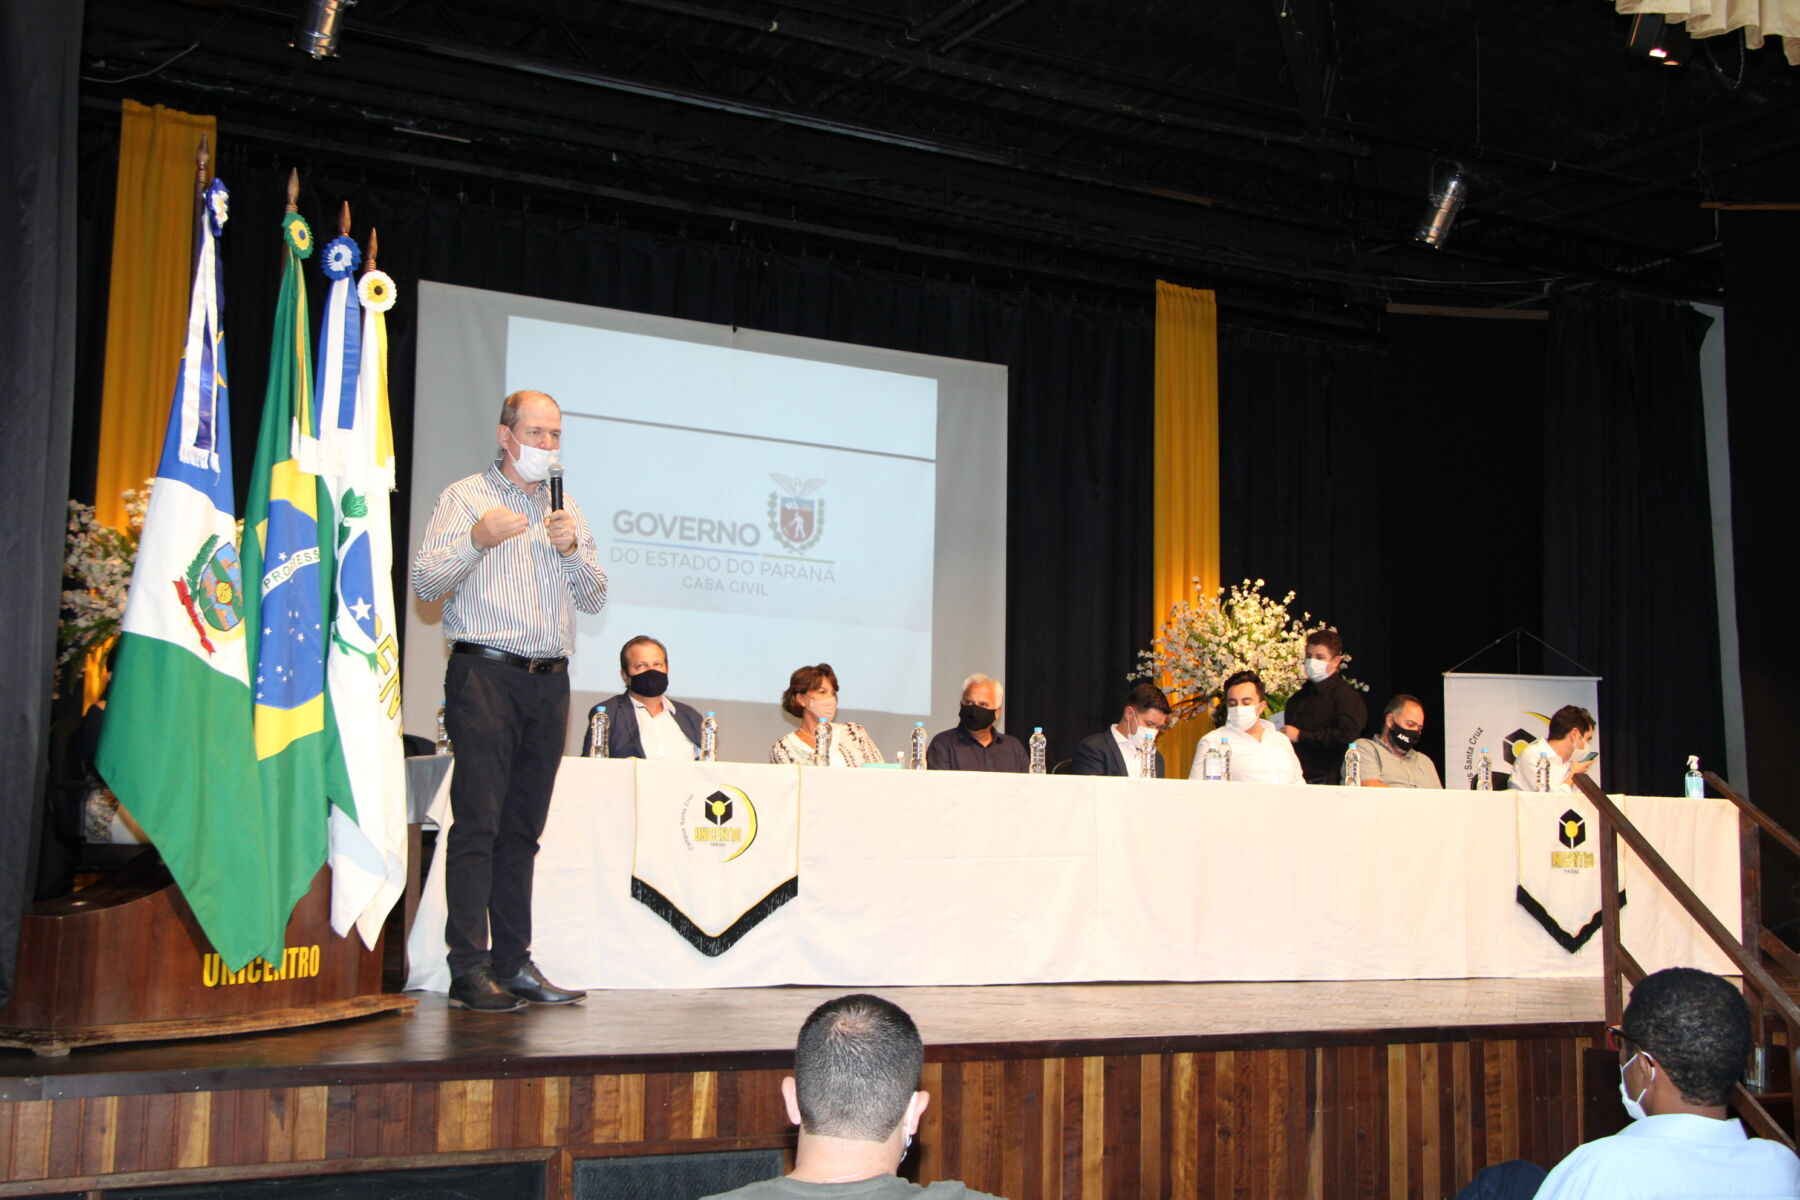 Governo do estado discute retomada econômica do Paraná em reunião na Unicentro